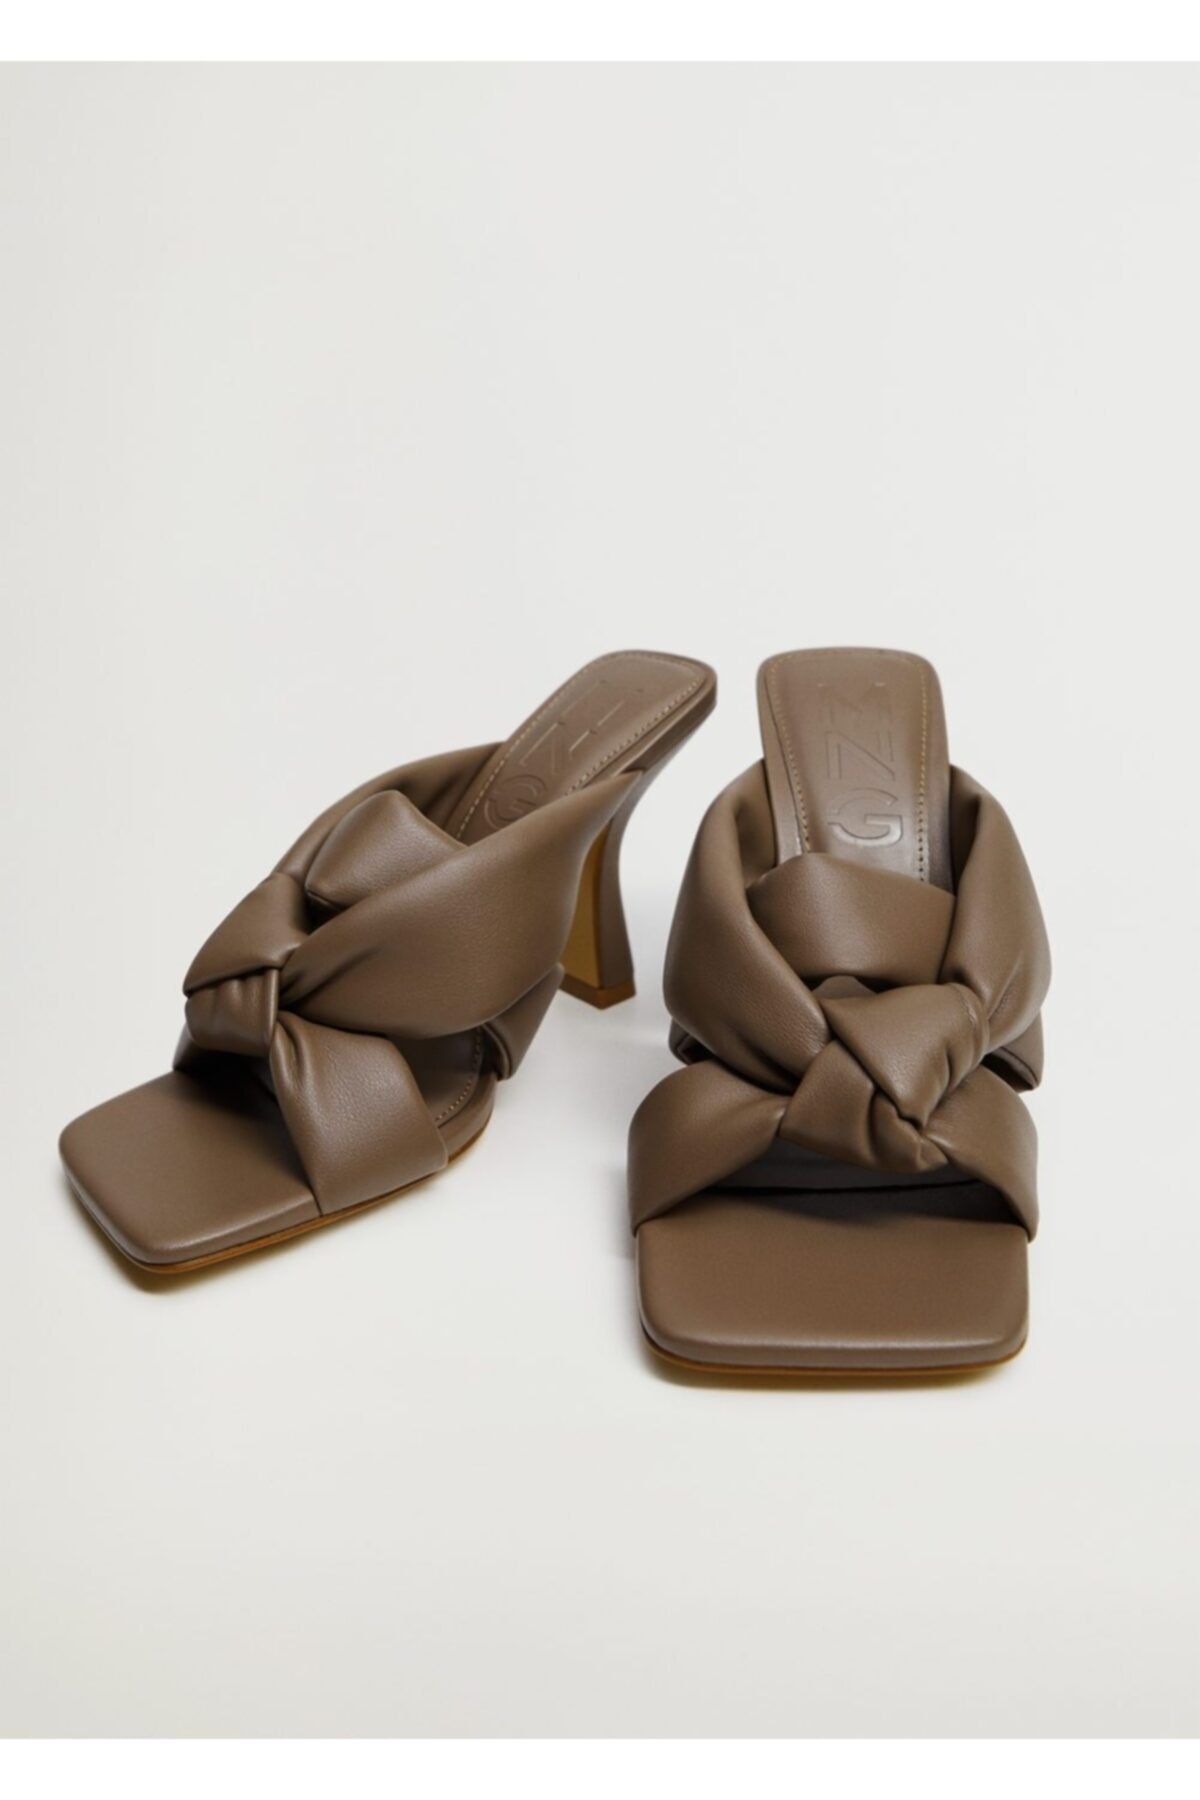 MANGO Kadın Açık/Pastel Kahverengi Düğüm Detaylı Topuklu Ayakkabı